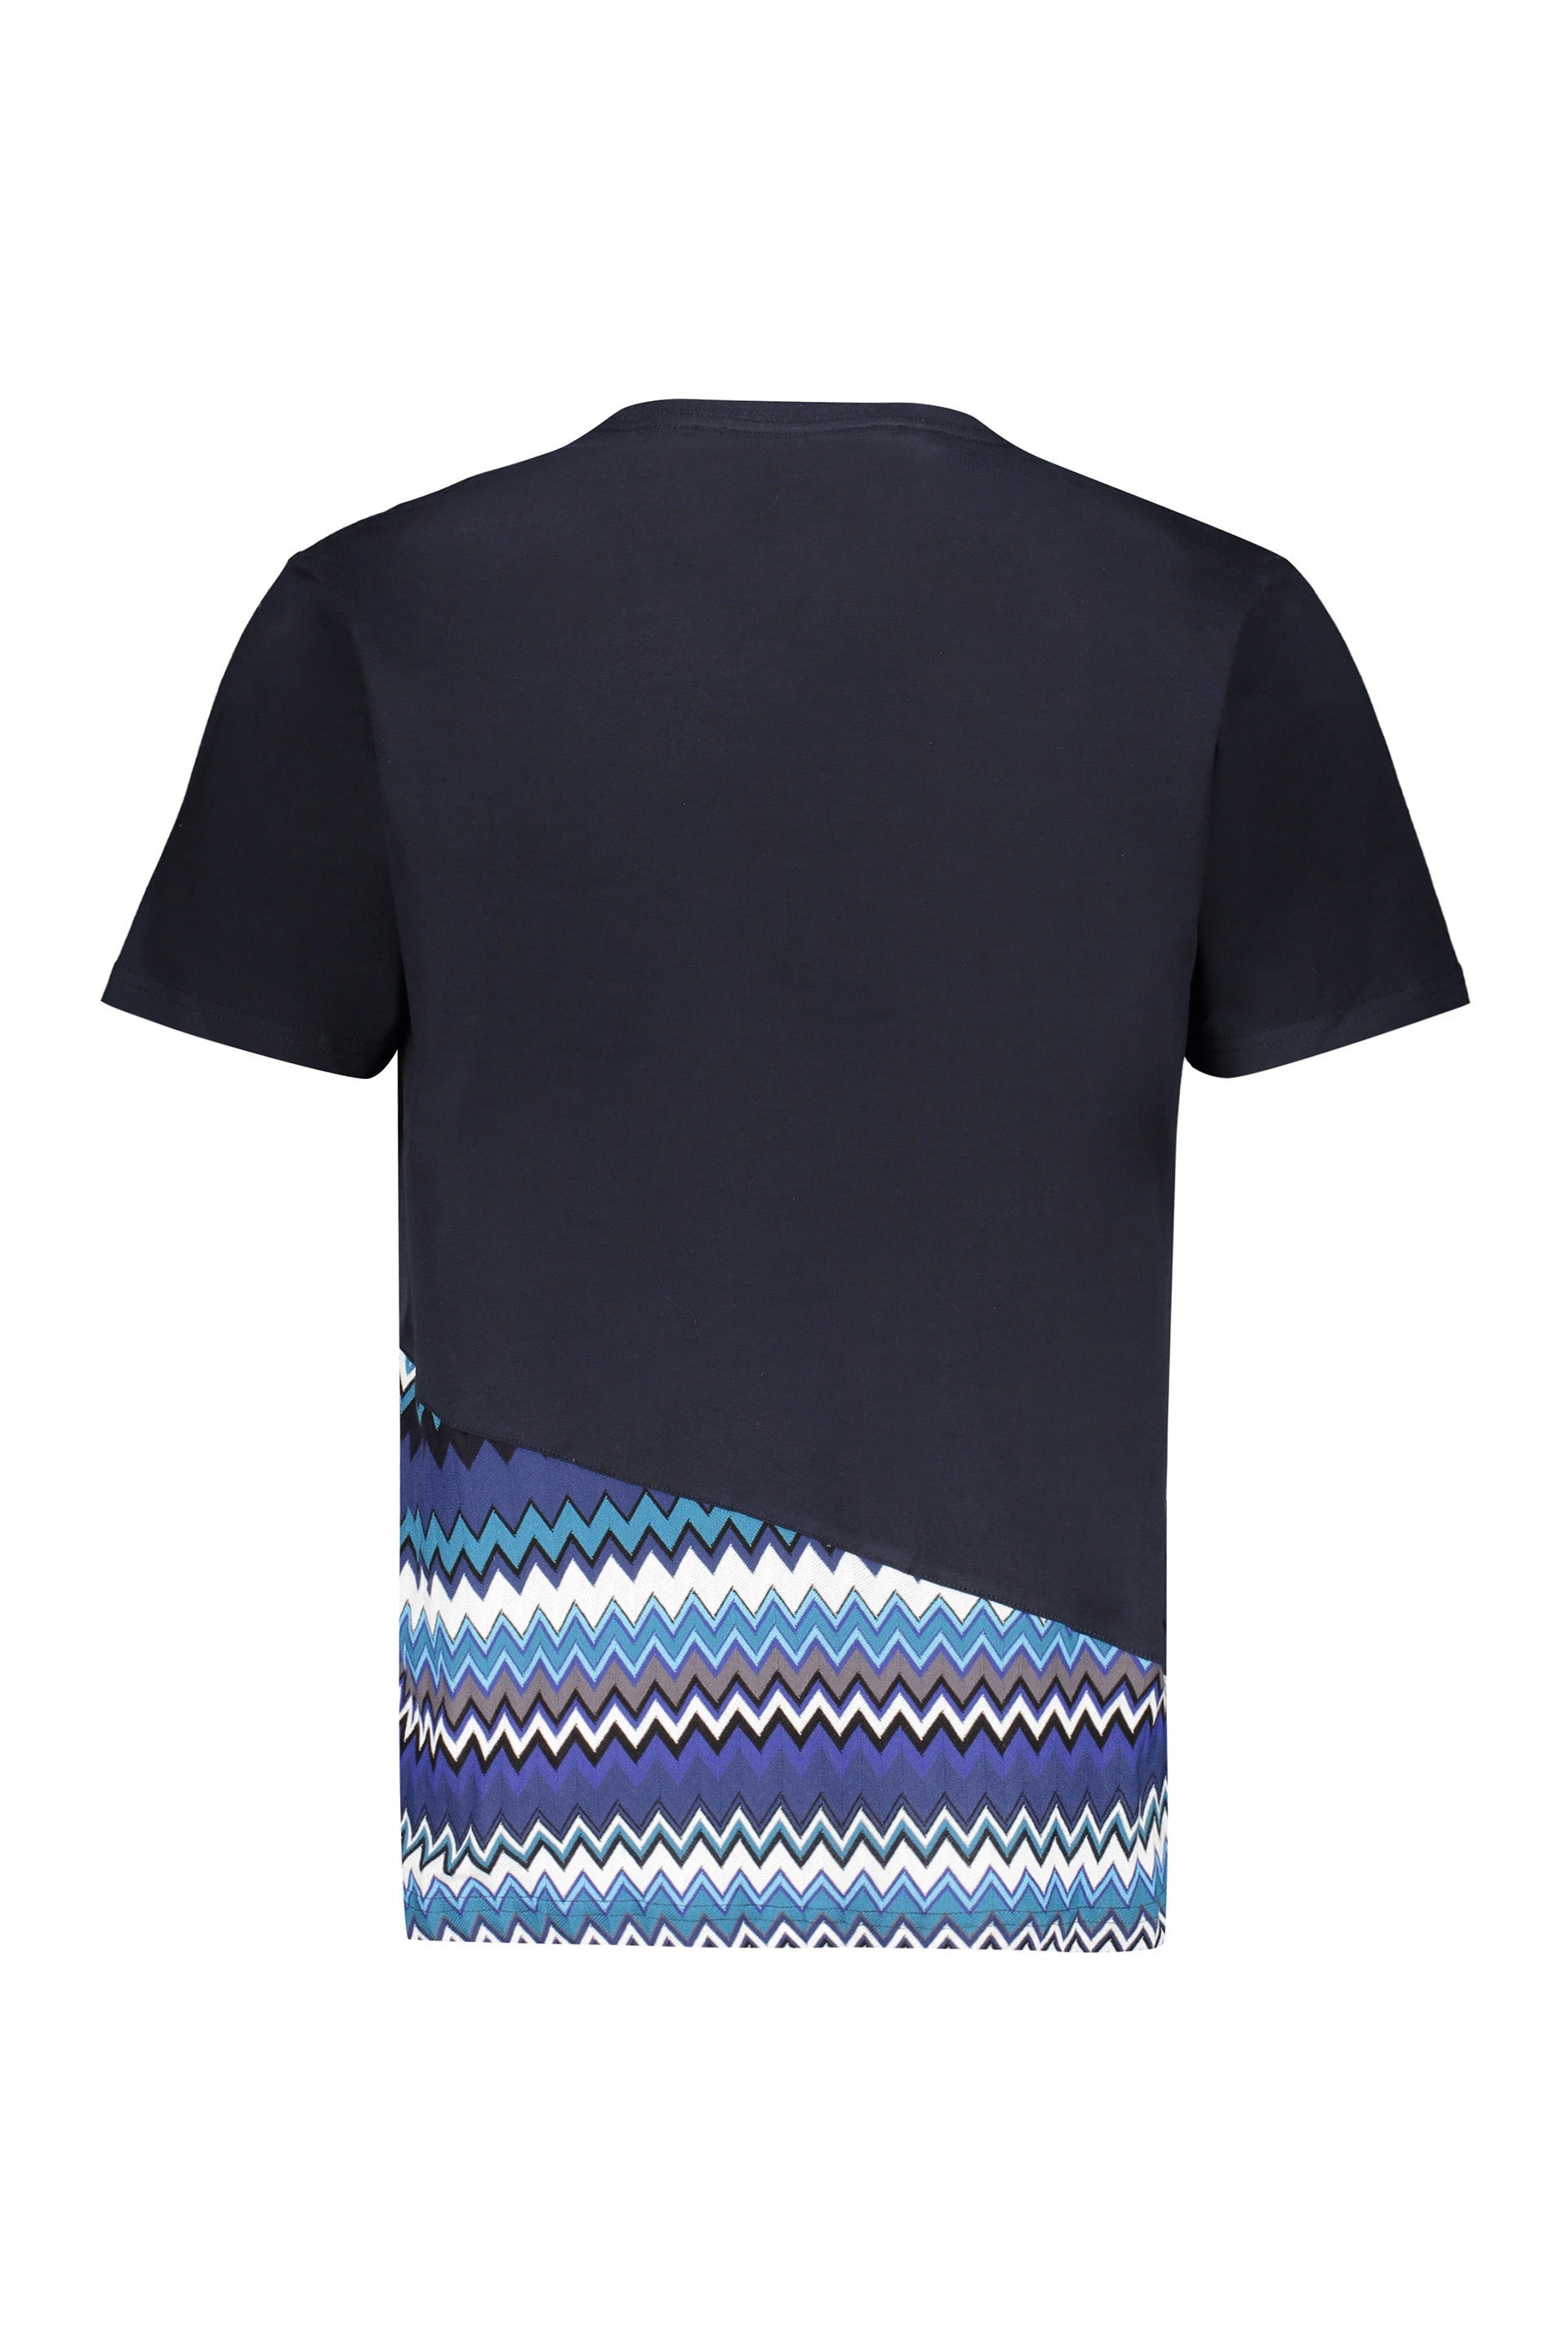 Missoni-OUTLET-SALE-Logo-cotton-t-shirt-Shirts-ARCHIVE-COLLECTION-2_96ad95c7-6f99-4a60-9ebc-ac63a5a0e13d.jpg